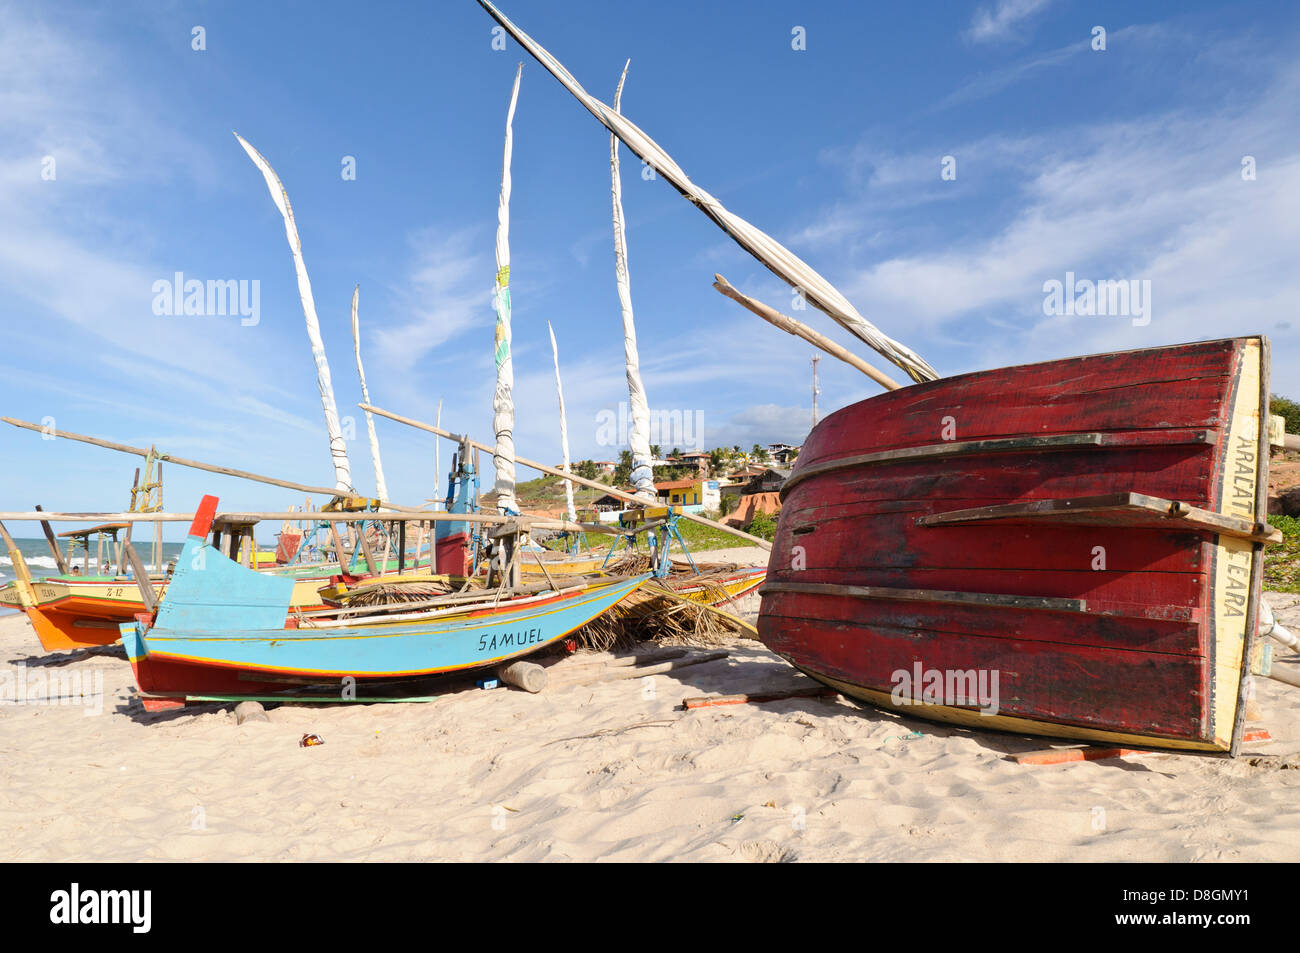 Sailboats at Canoa Quebrada beach, CearÃ¡, Brazil Stock Photo